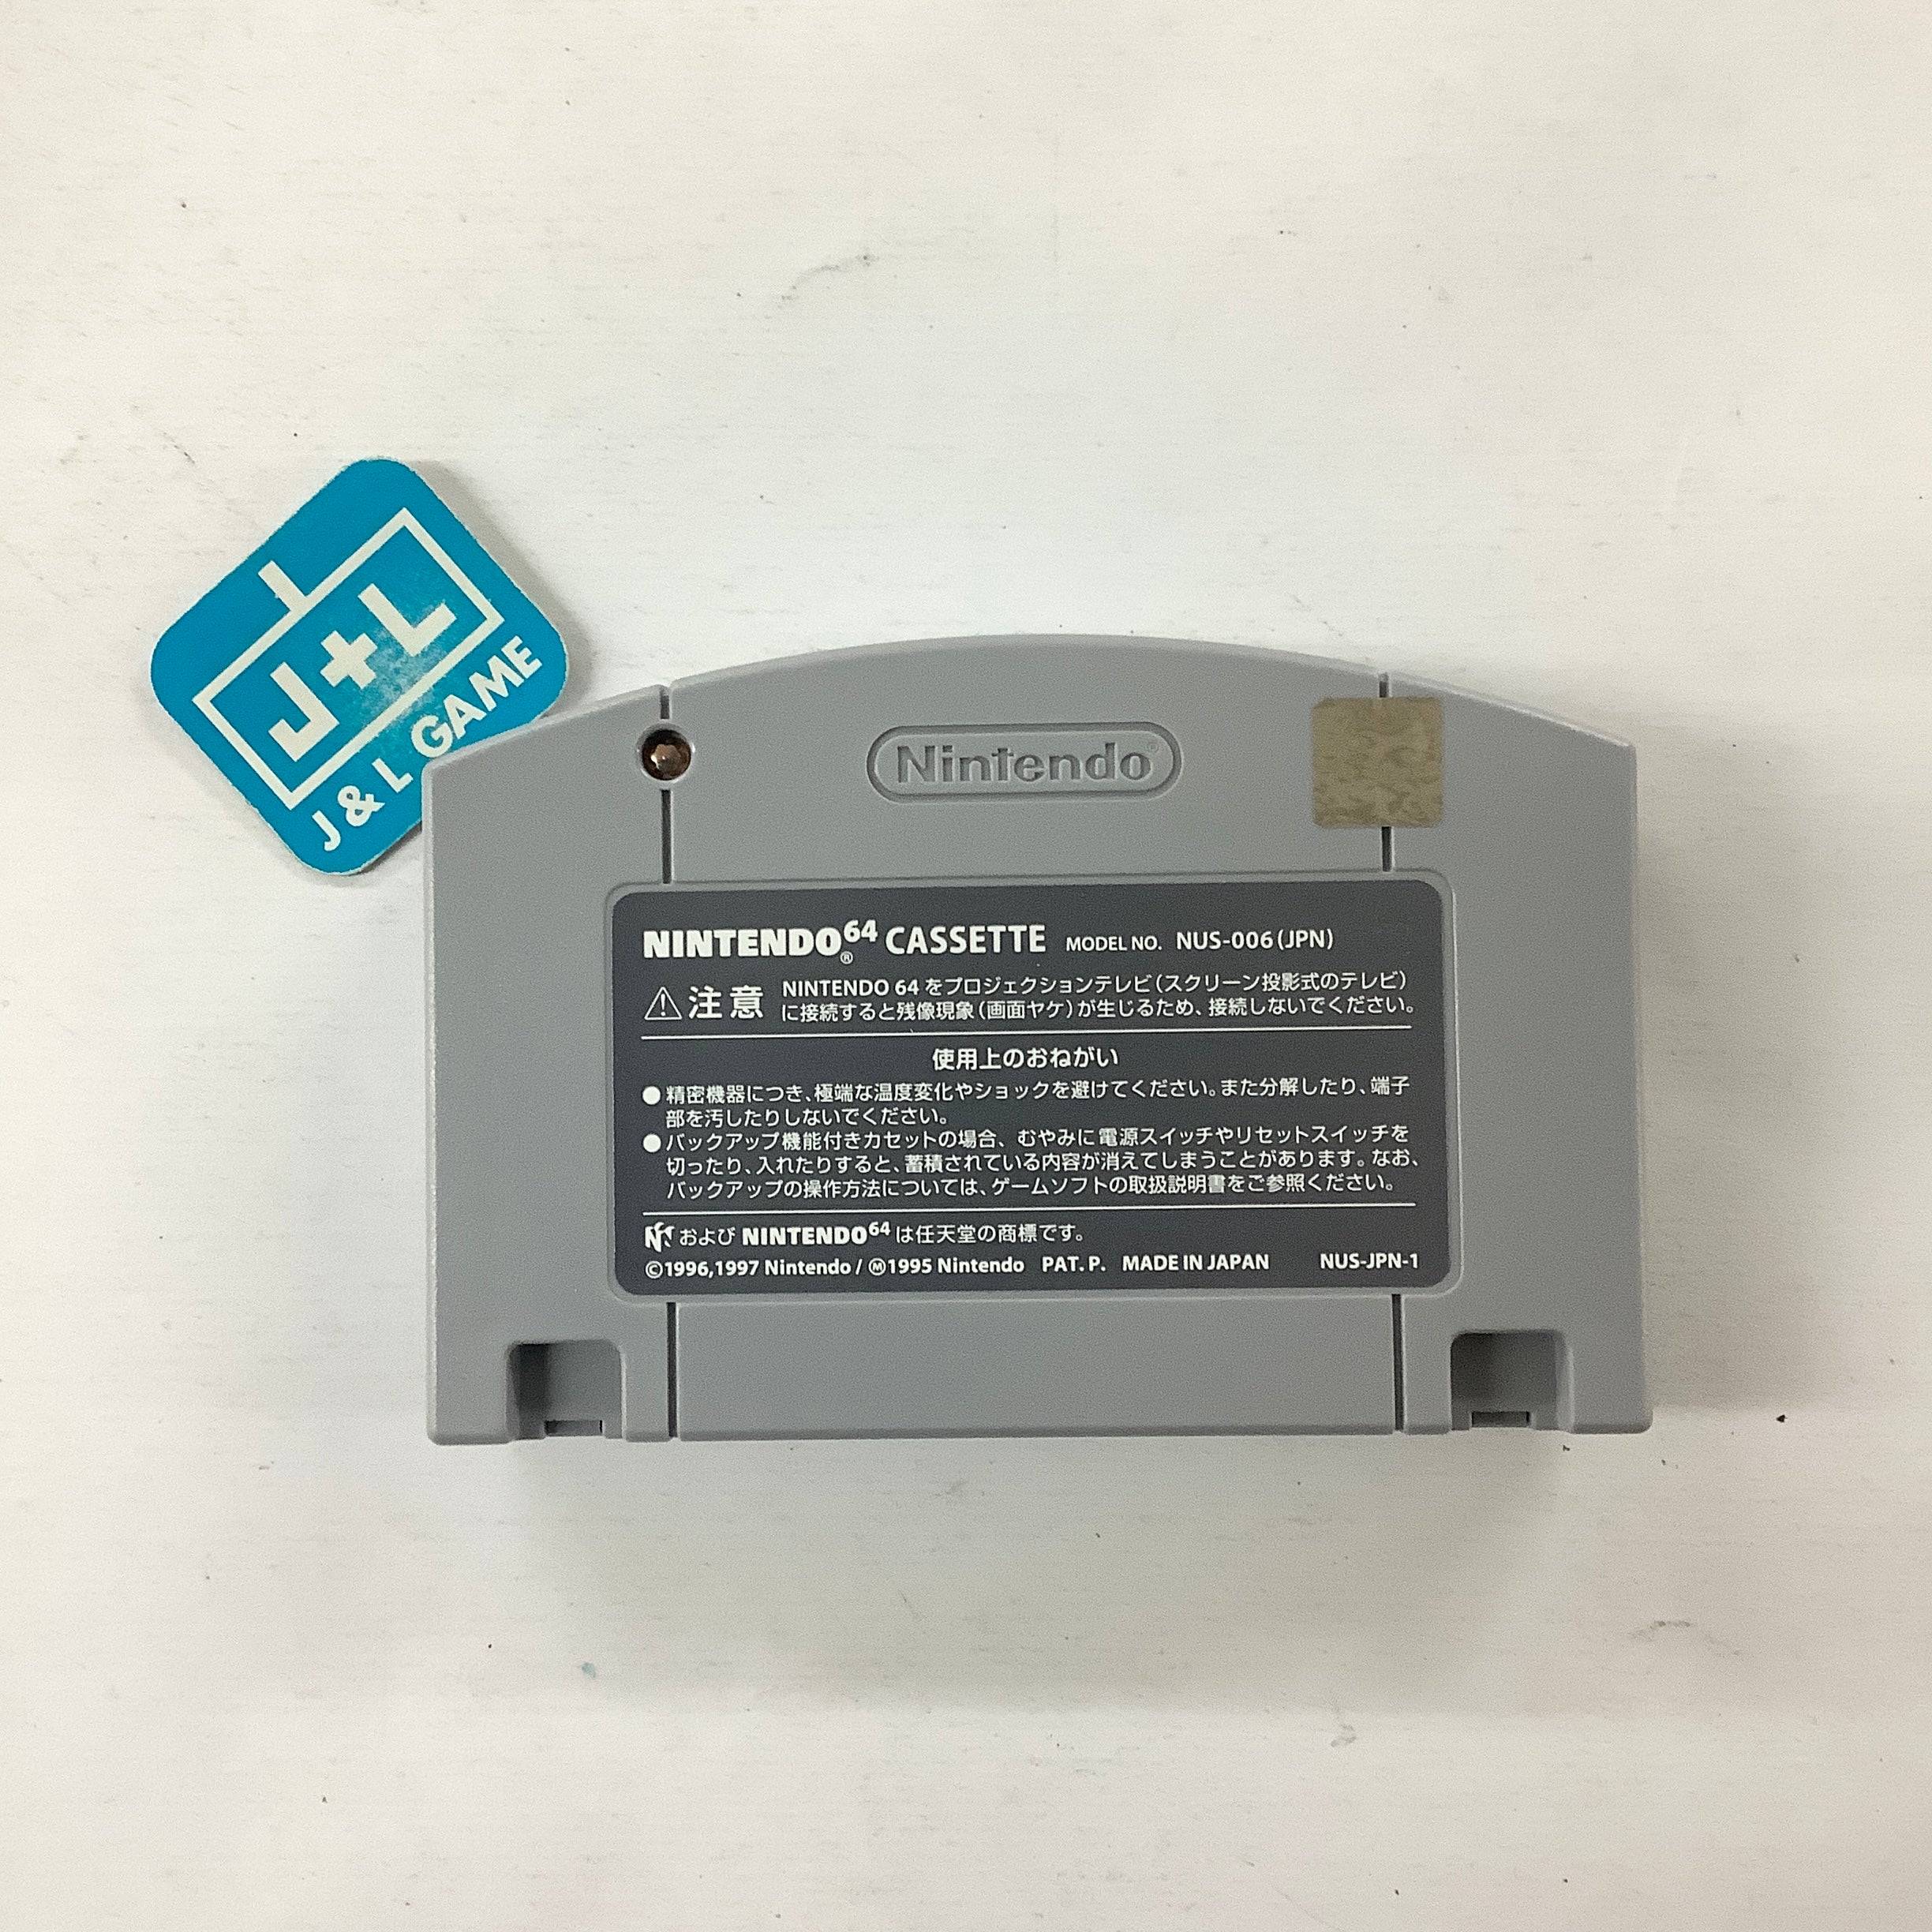 64 de Hakken! Tamagotchi Minna de Tamagotchi World - (N64) Nintendo 64 [Pre-Owned] (Japanese Import) Video Games Nintendo   